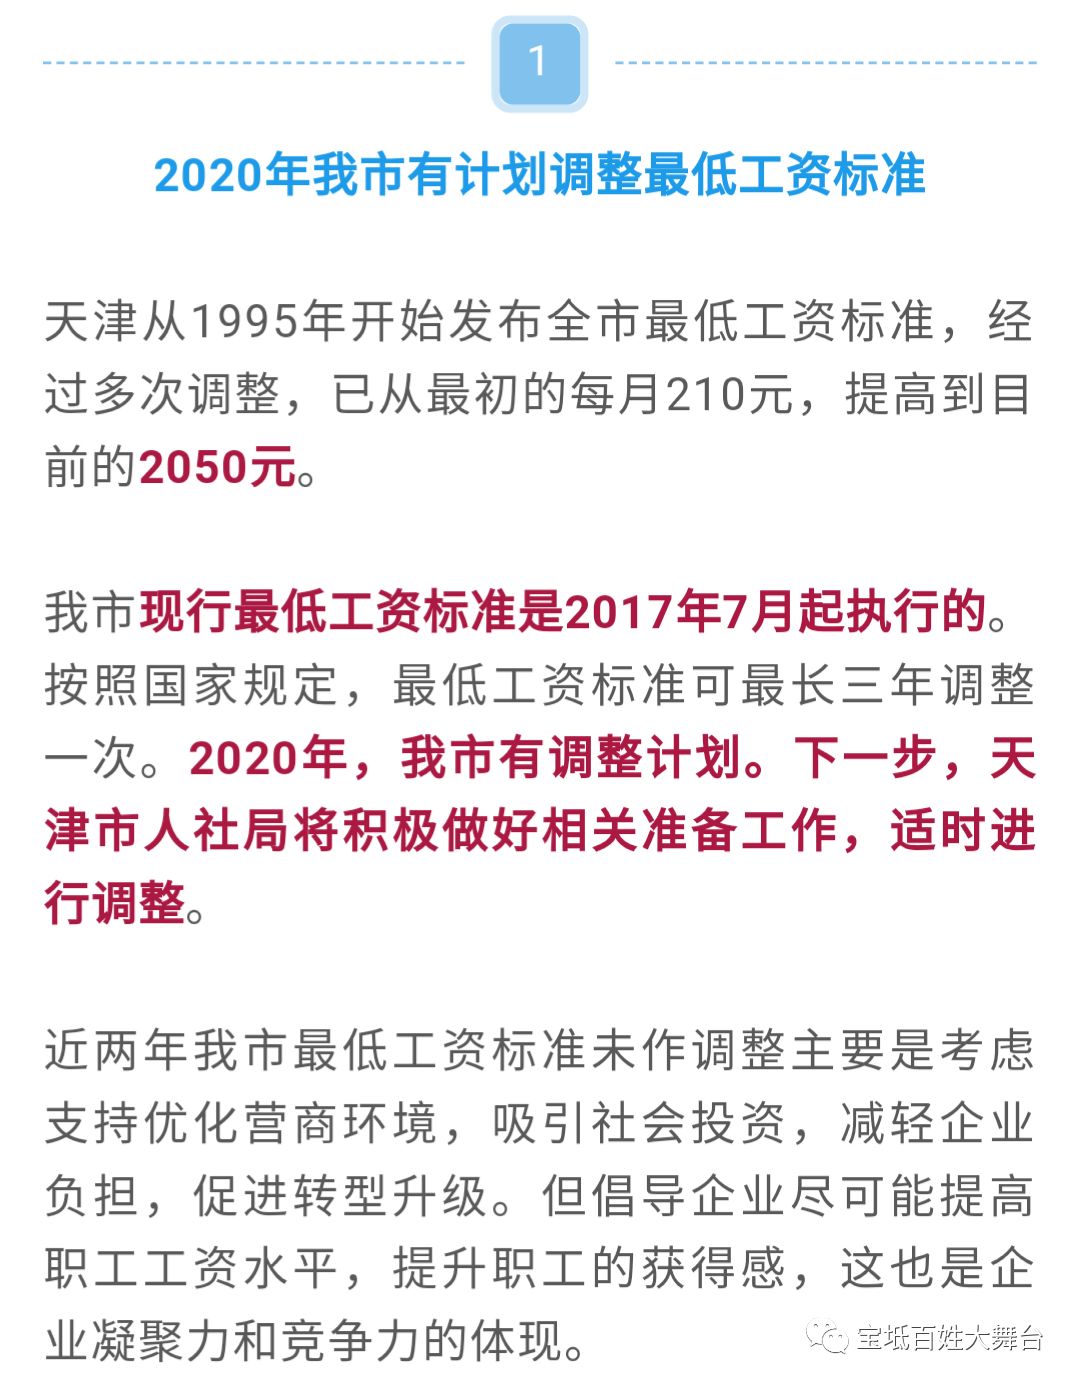 最新 明年天津将适时调整最低工资标准